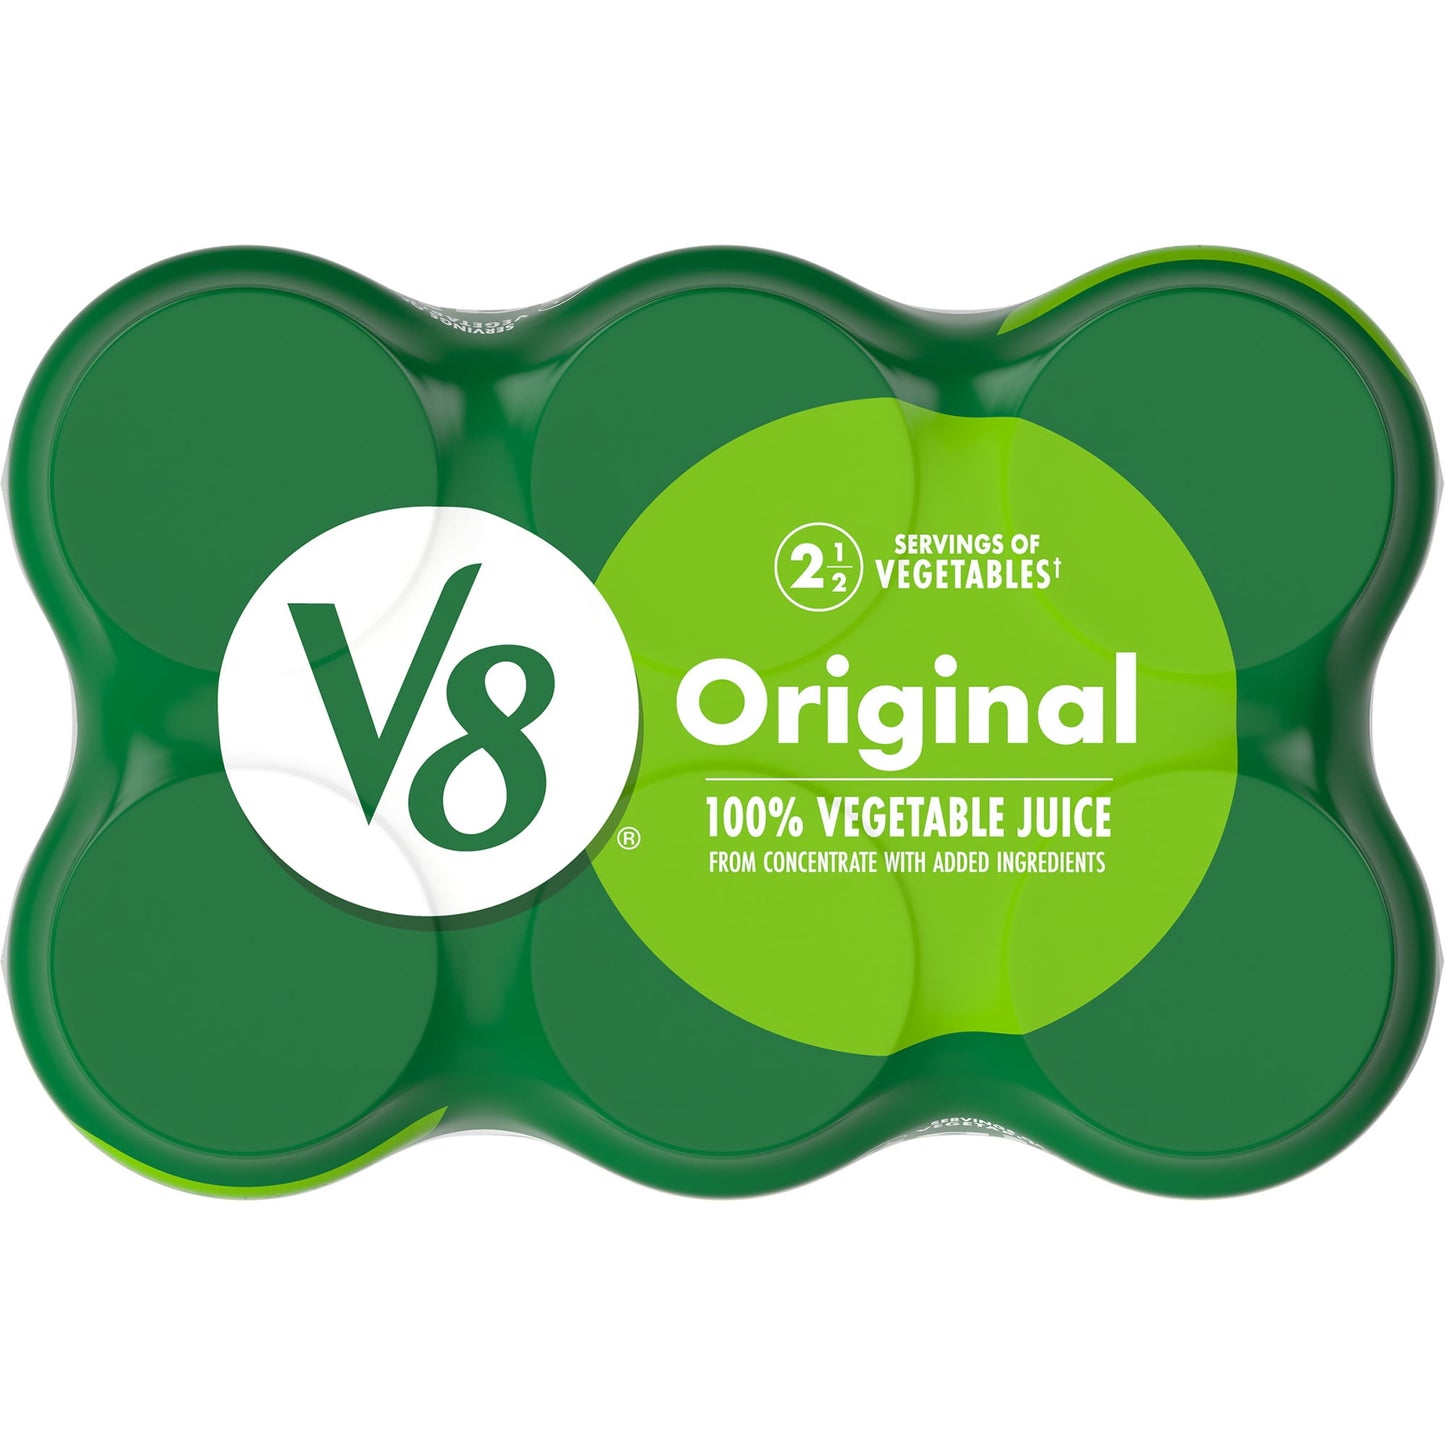 V8 Original 100% Vegetable Juice, 11.5 fl oz Can (Pack of 6)